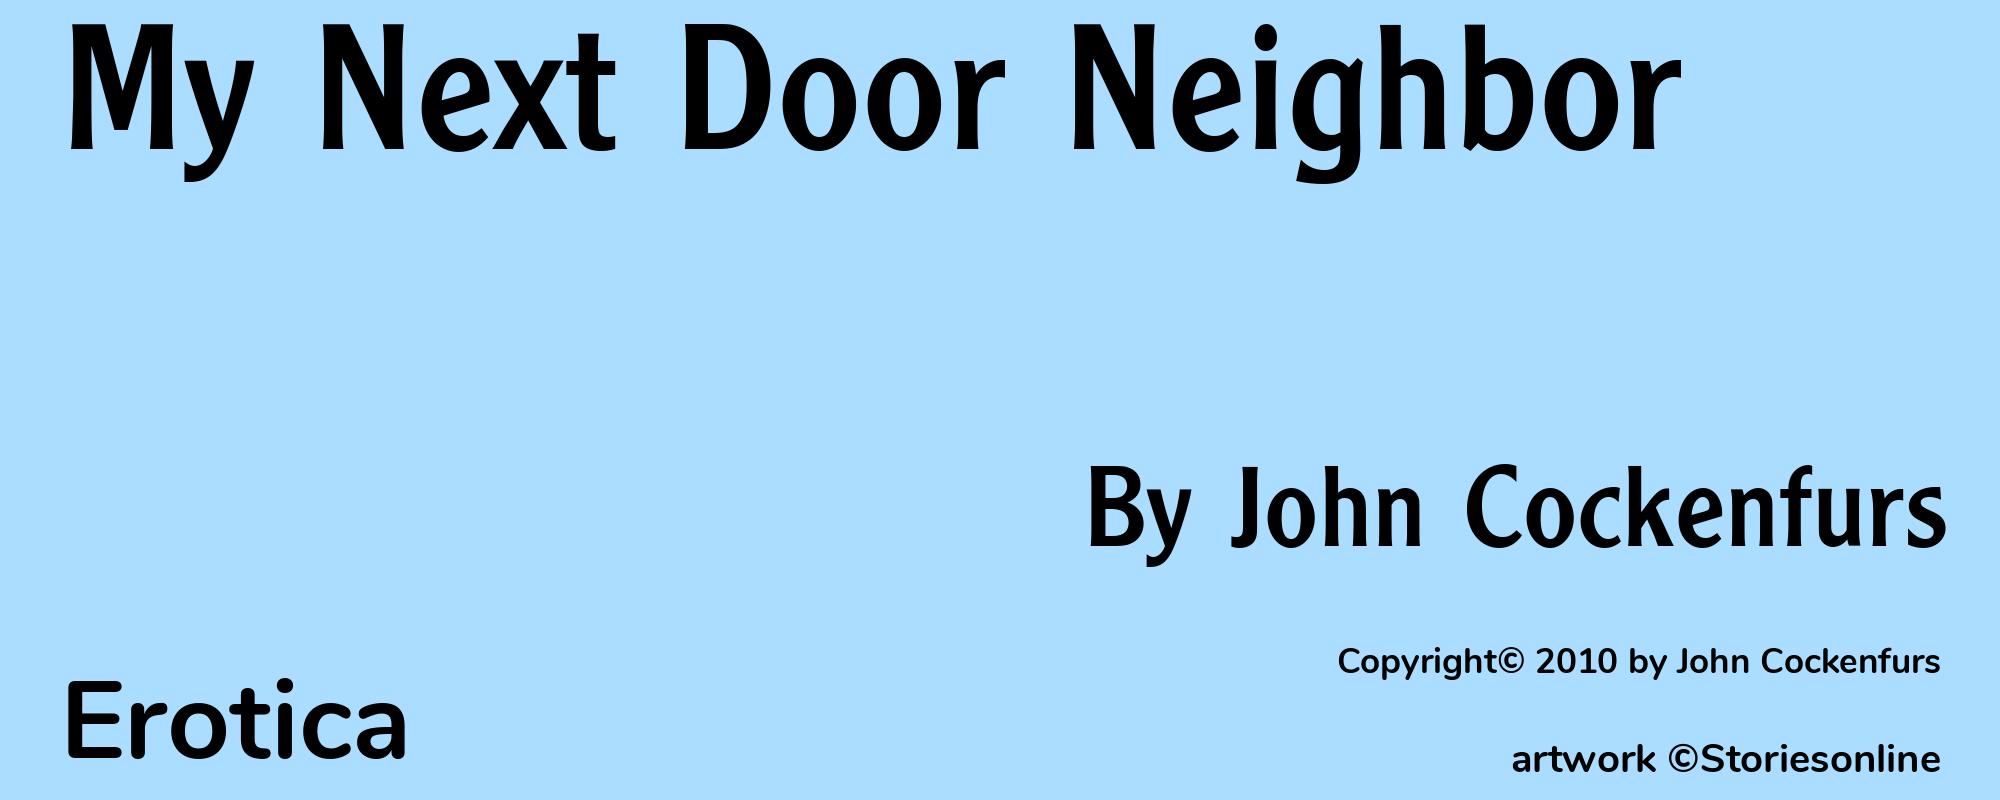 My Next Door Neighbor - Cover